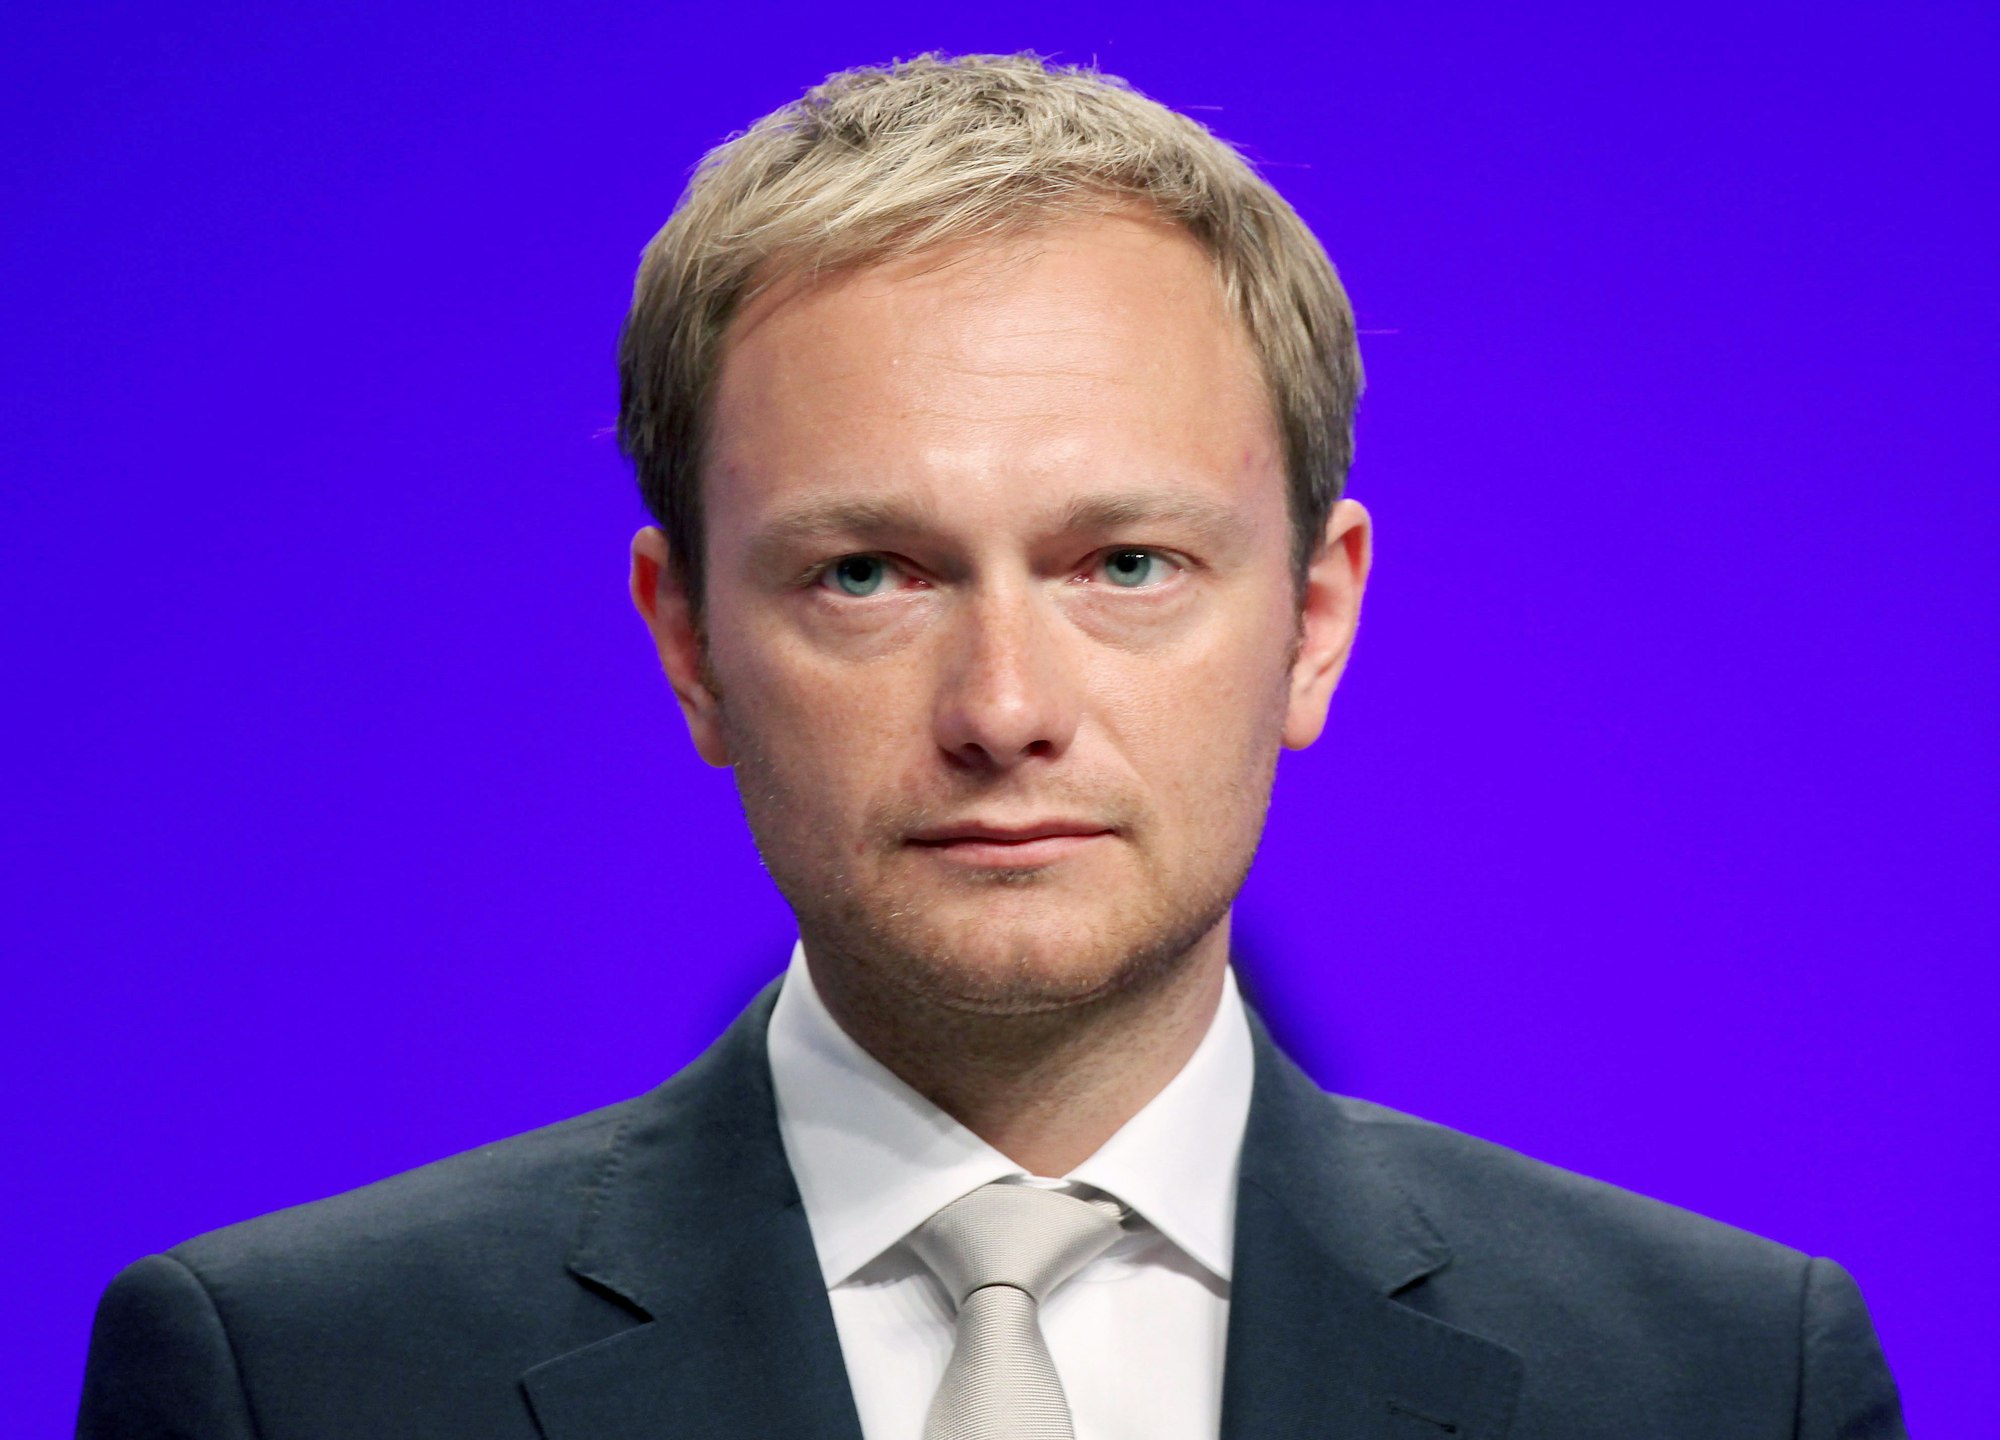 Der damalige FDP-Generalsekretär Christian Lindner beim Parteitag 2010 in Köln.